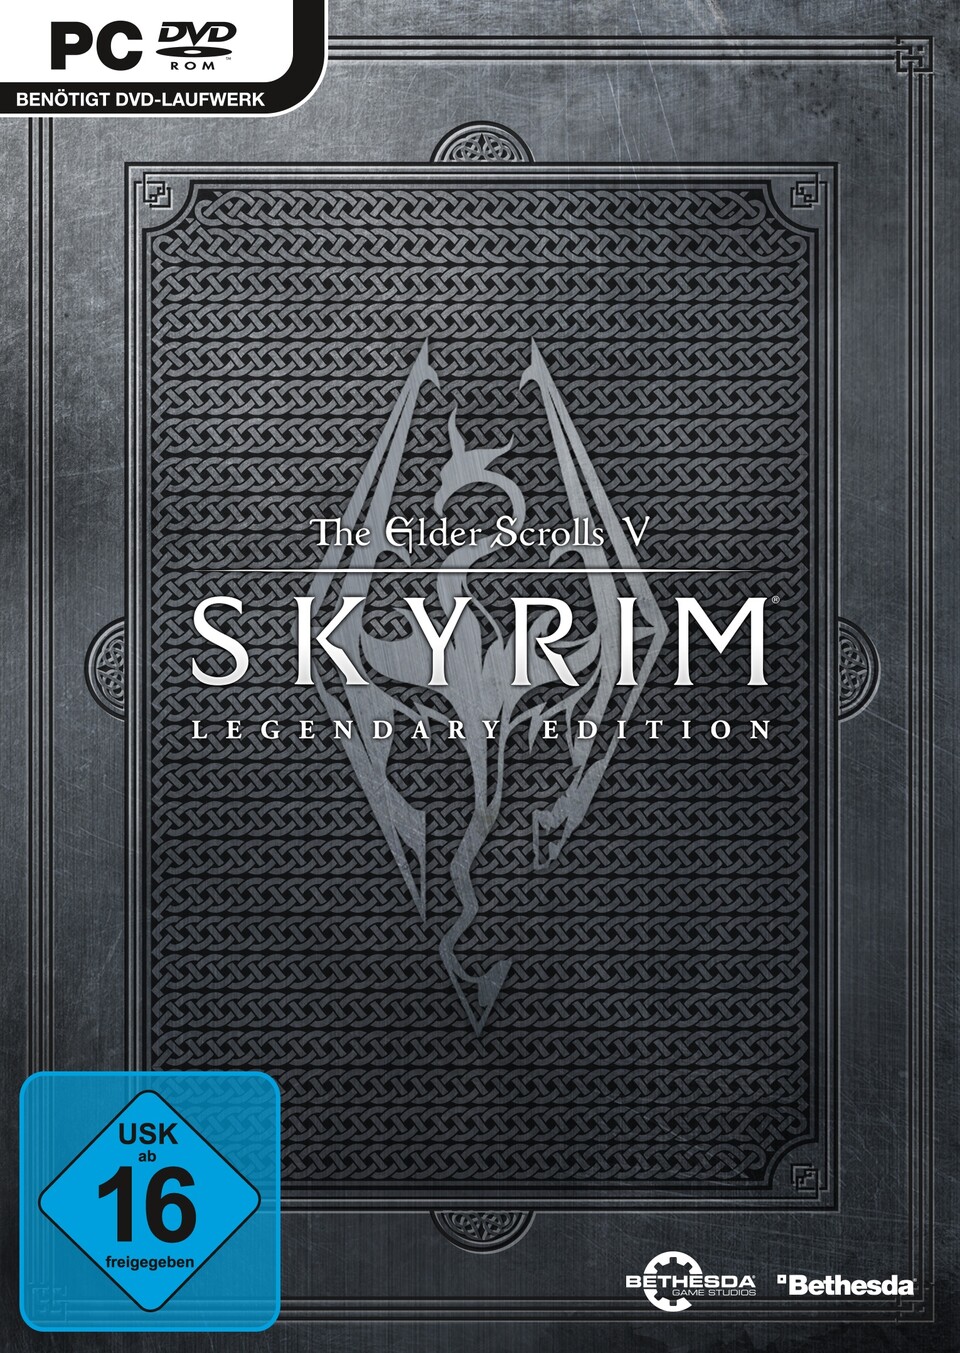 Die Legendary Edition von The Elder Scrolls: Skyrim verkauft sich offenbar sehr gut.